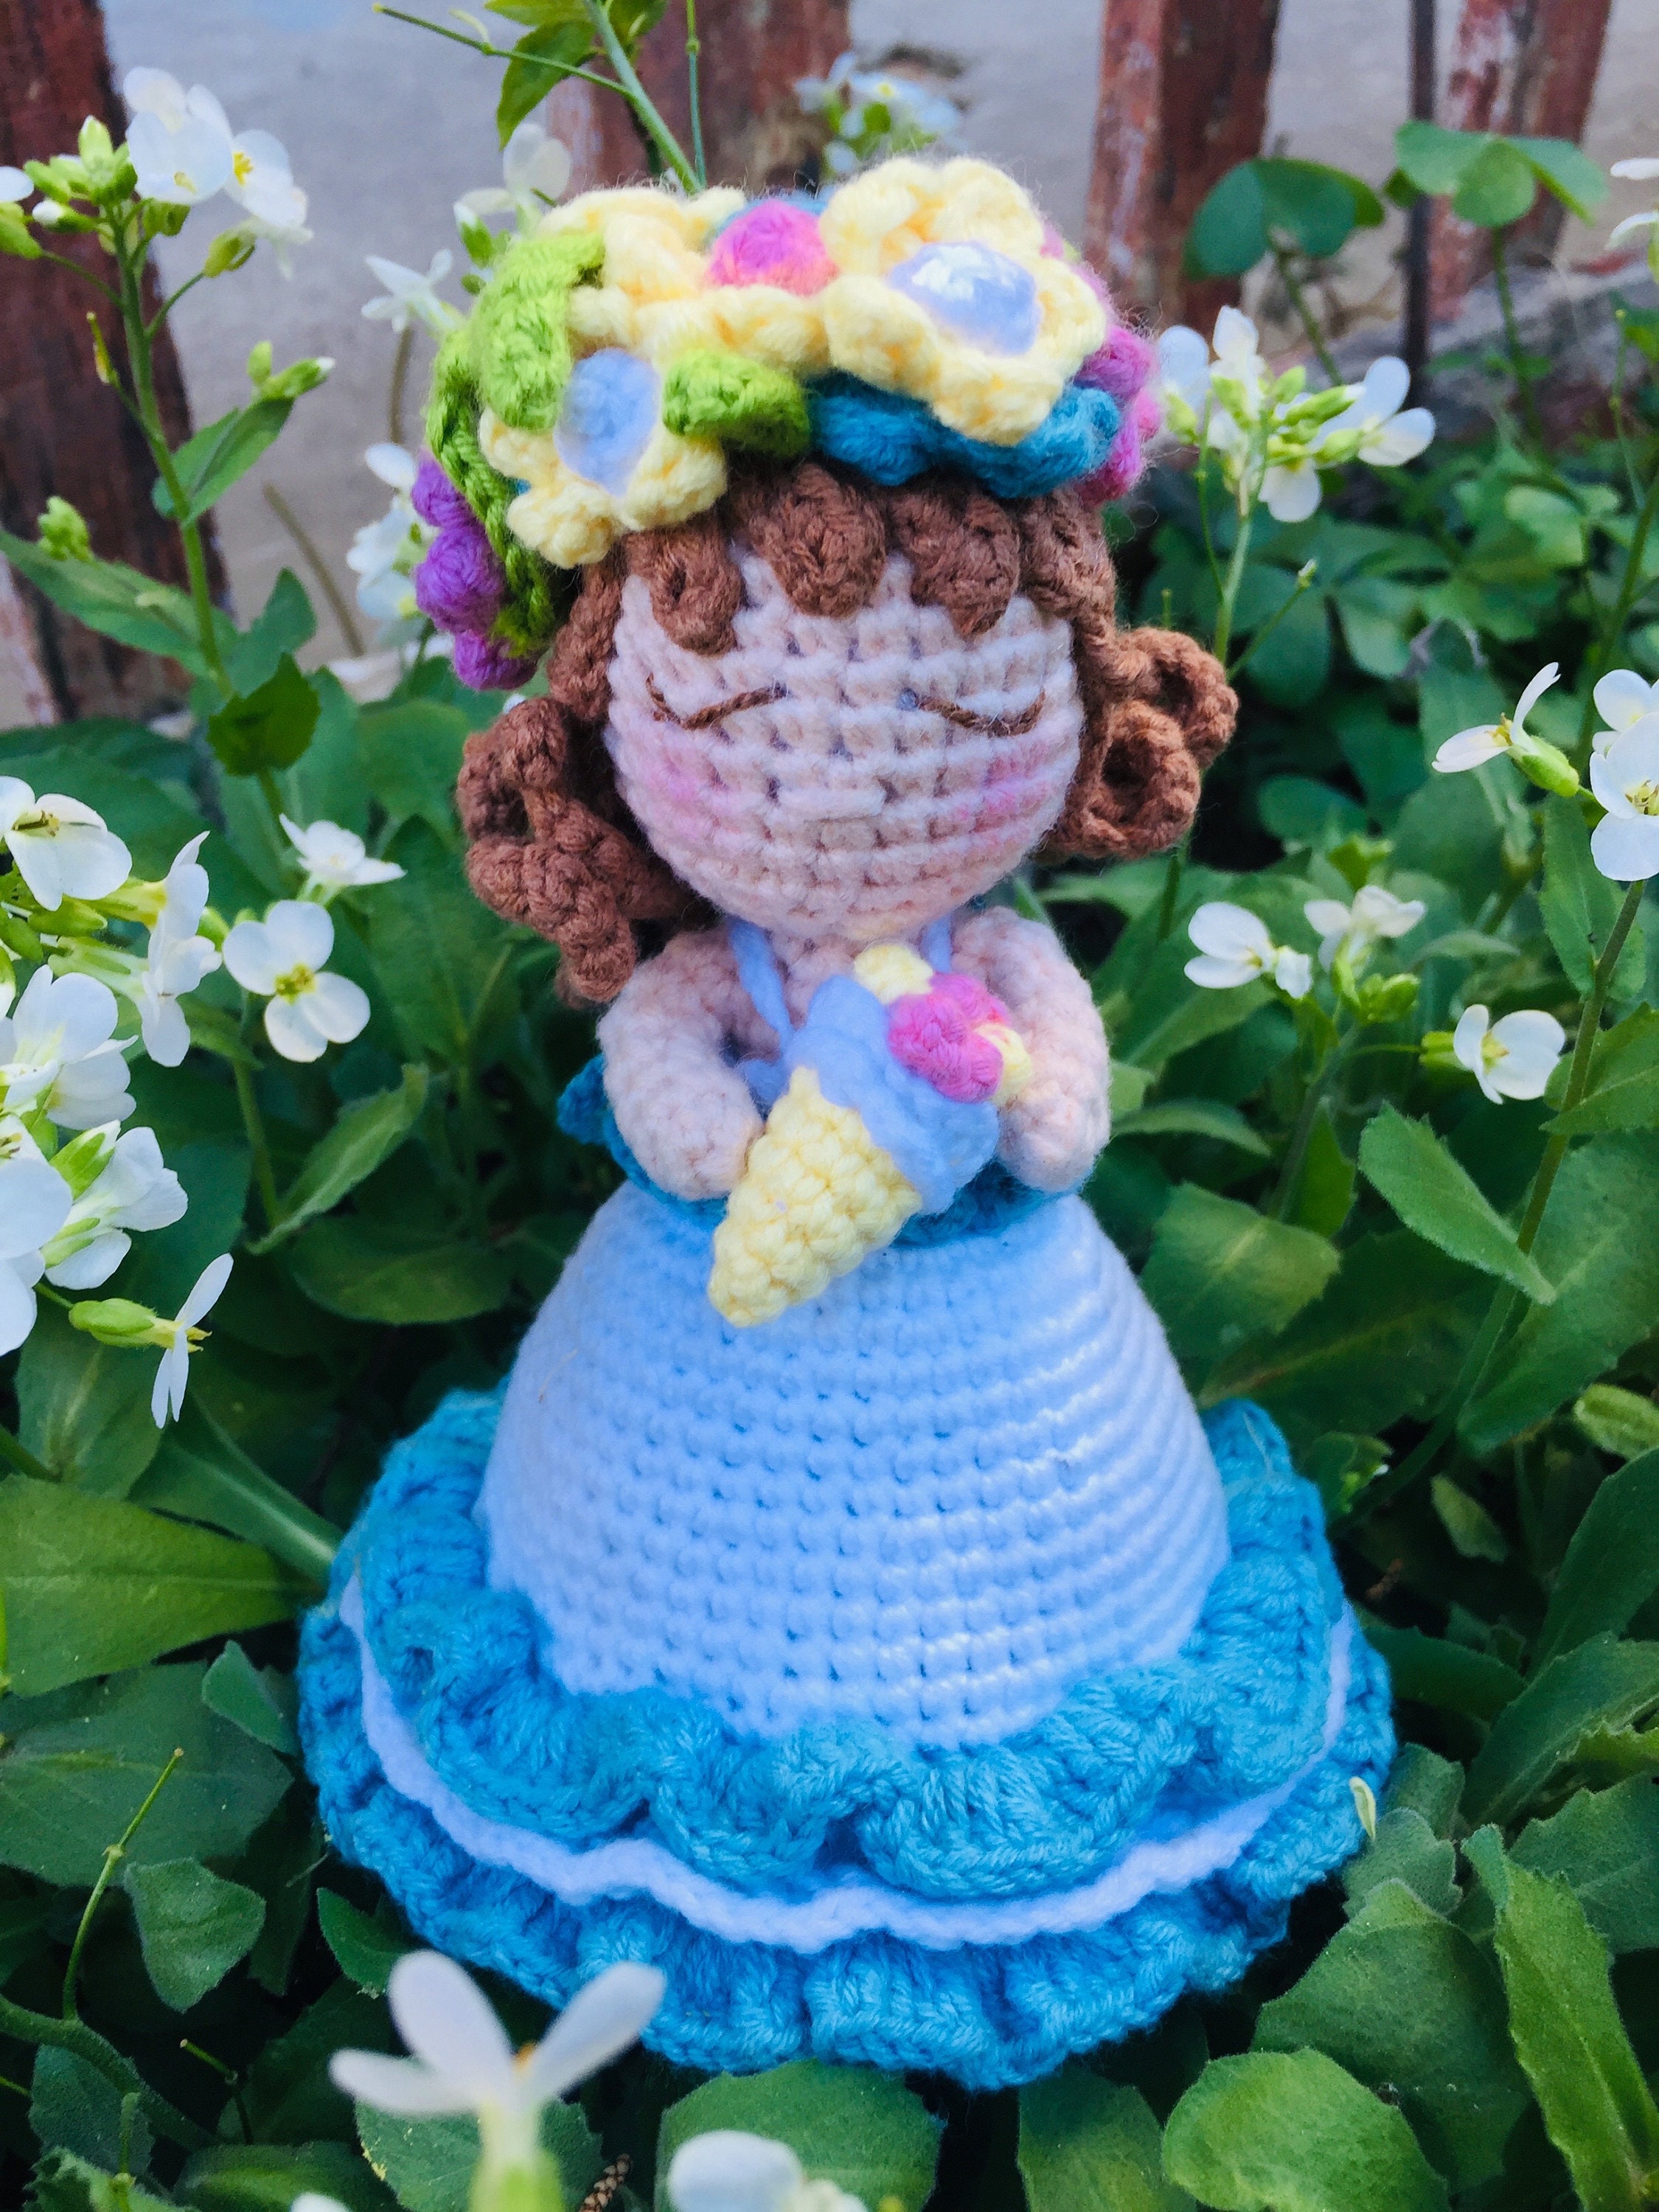 Reversible Doll into bouquet of flowers Crochet Pattern – Monacrochet